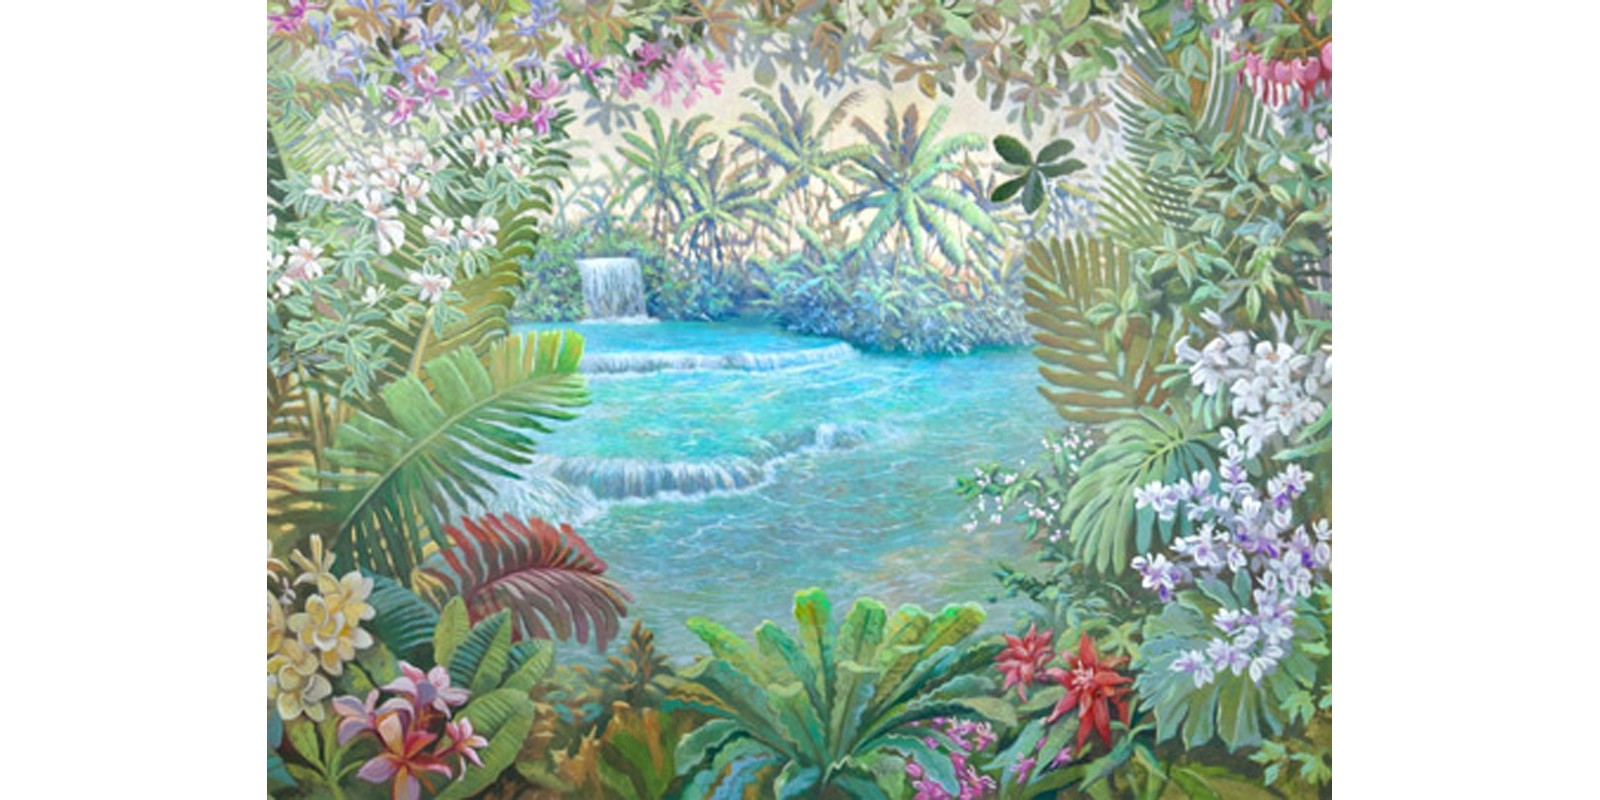 Andrea Del Missier - Cascata tropicale (detail)